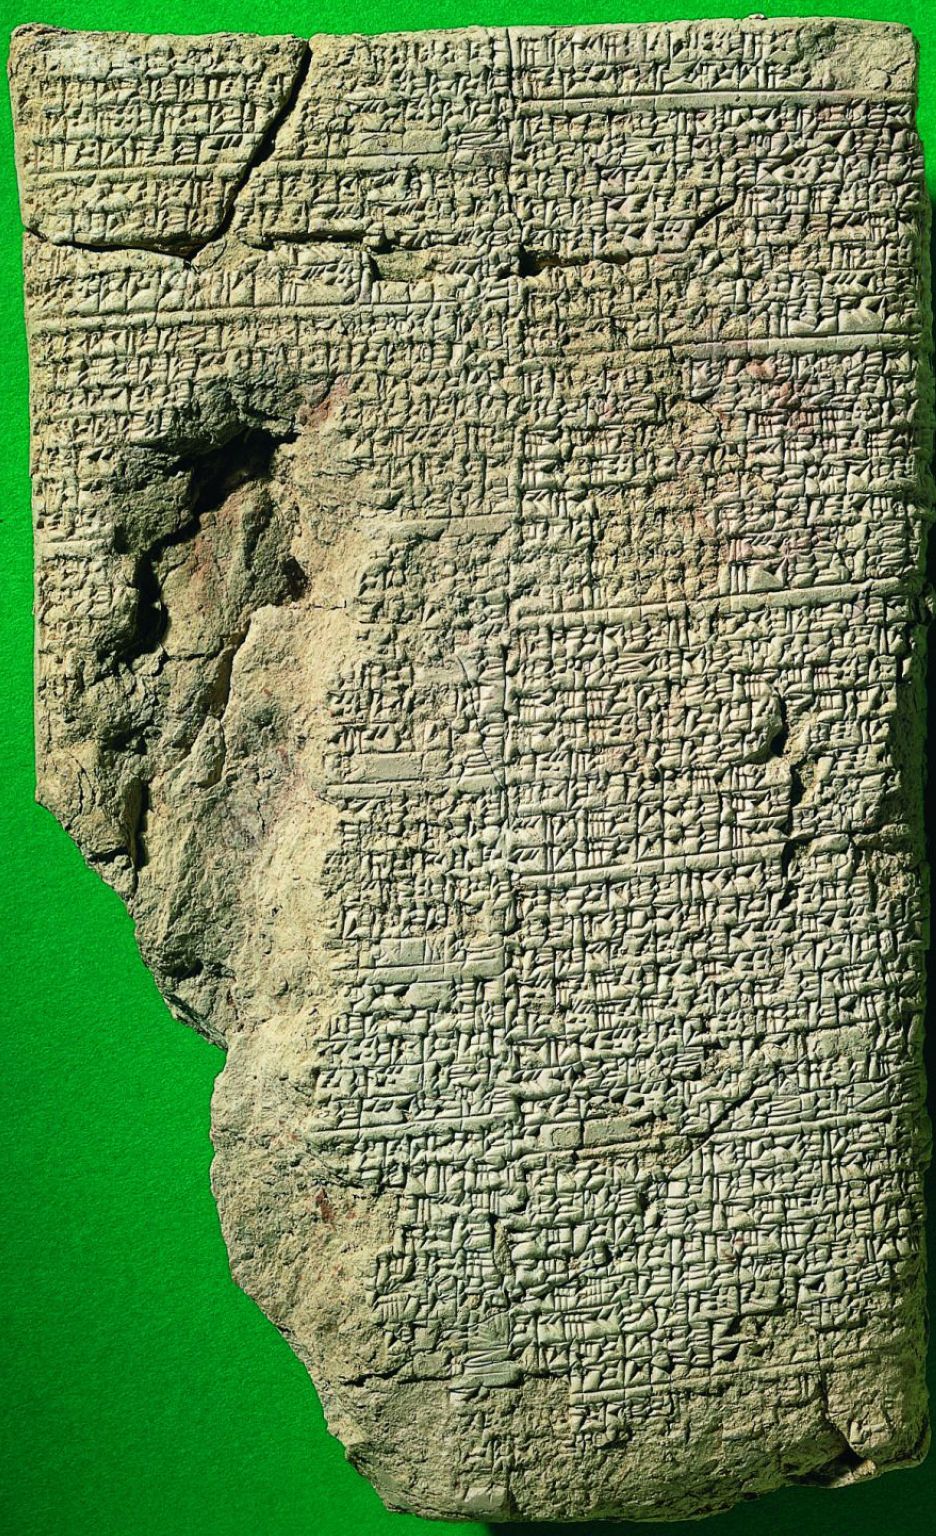 écriture cunéiforme (tablette du IIe millénaire avant J.-C.)